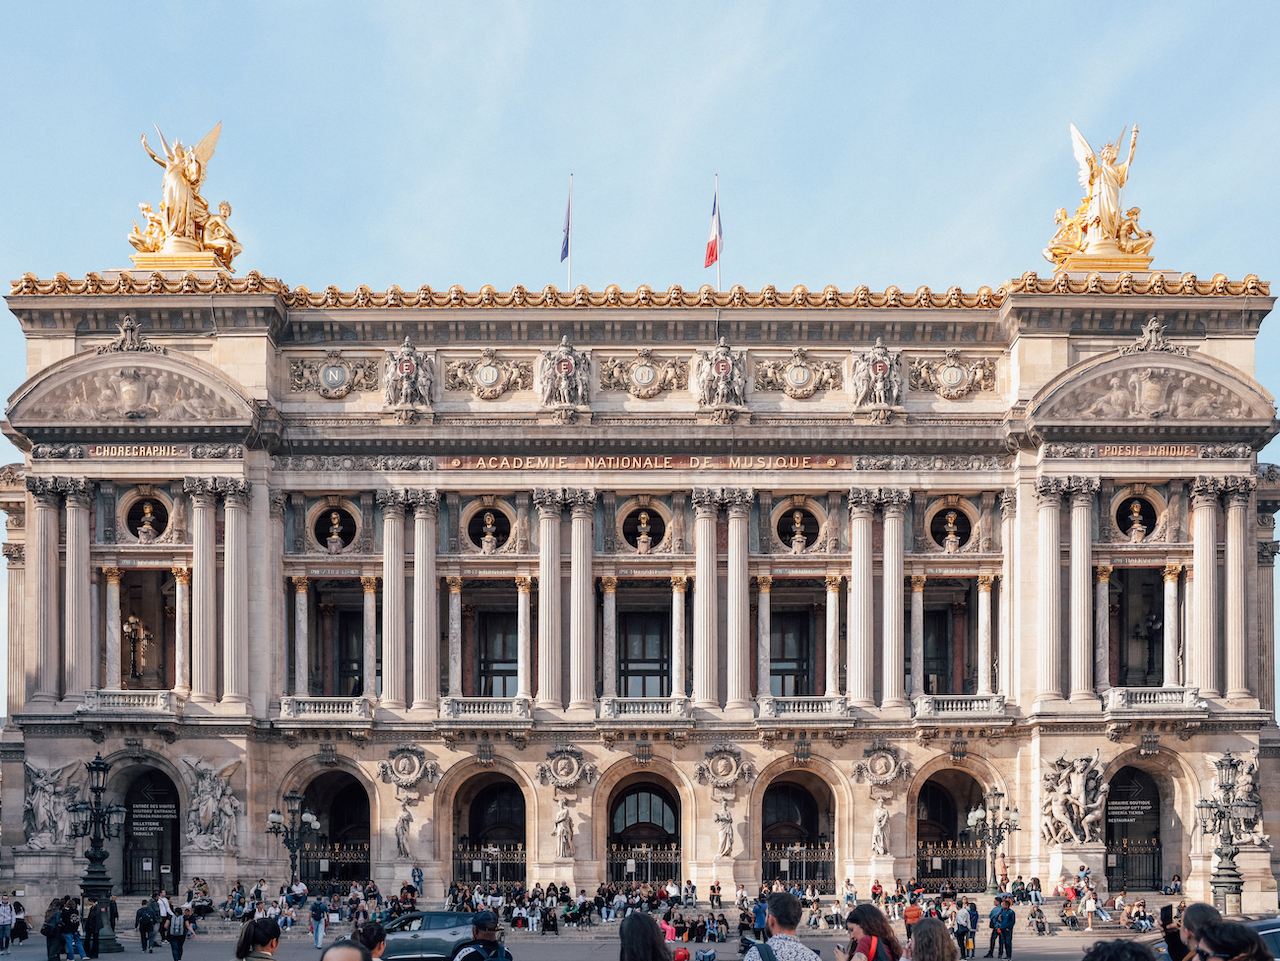 La facade principale du Palais Garnier - Paris - France